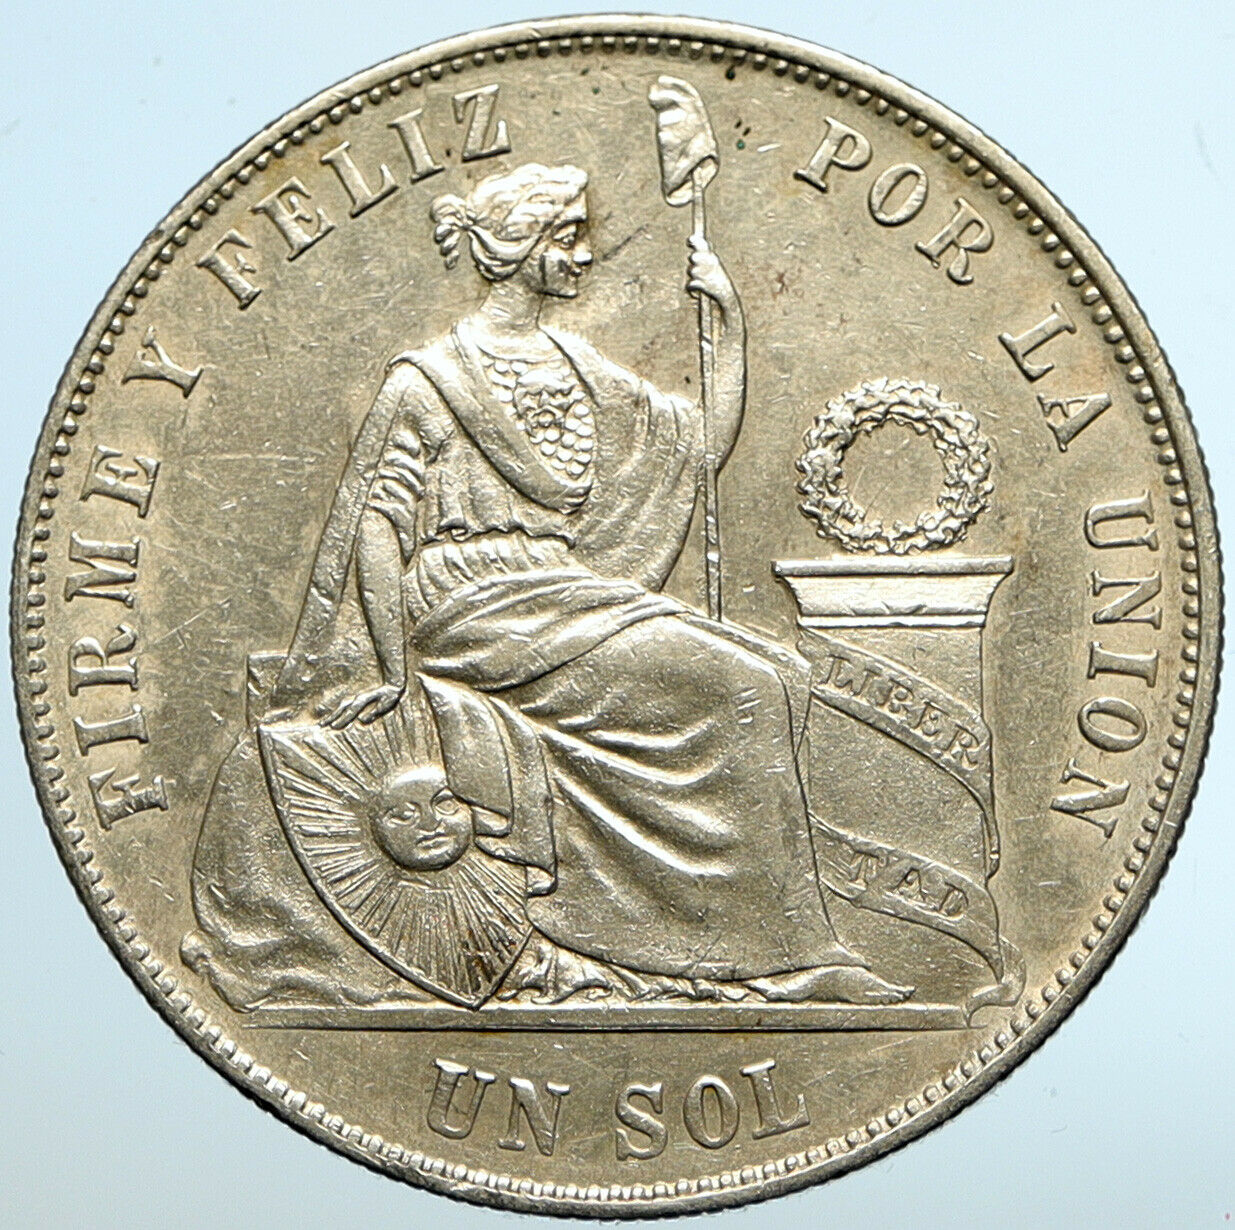 1869 PERU South America LIBERTY Antique Genuine Silver SOL Peruvian Coin i102615